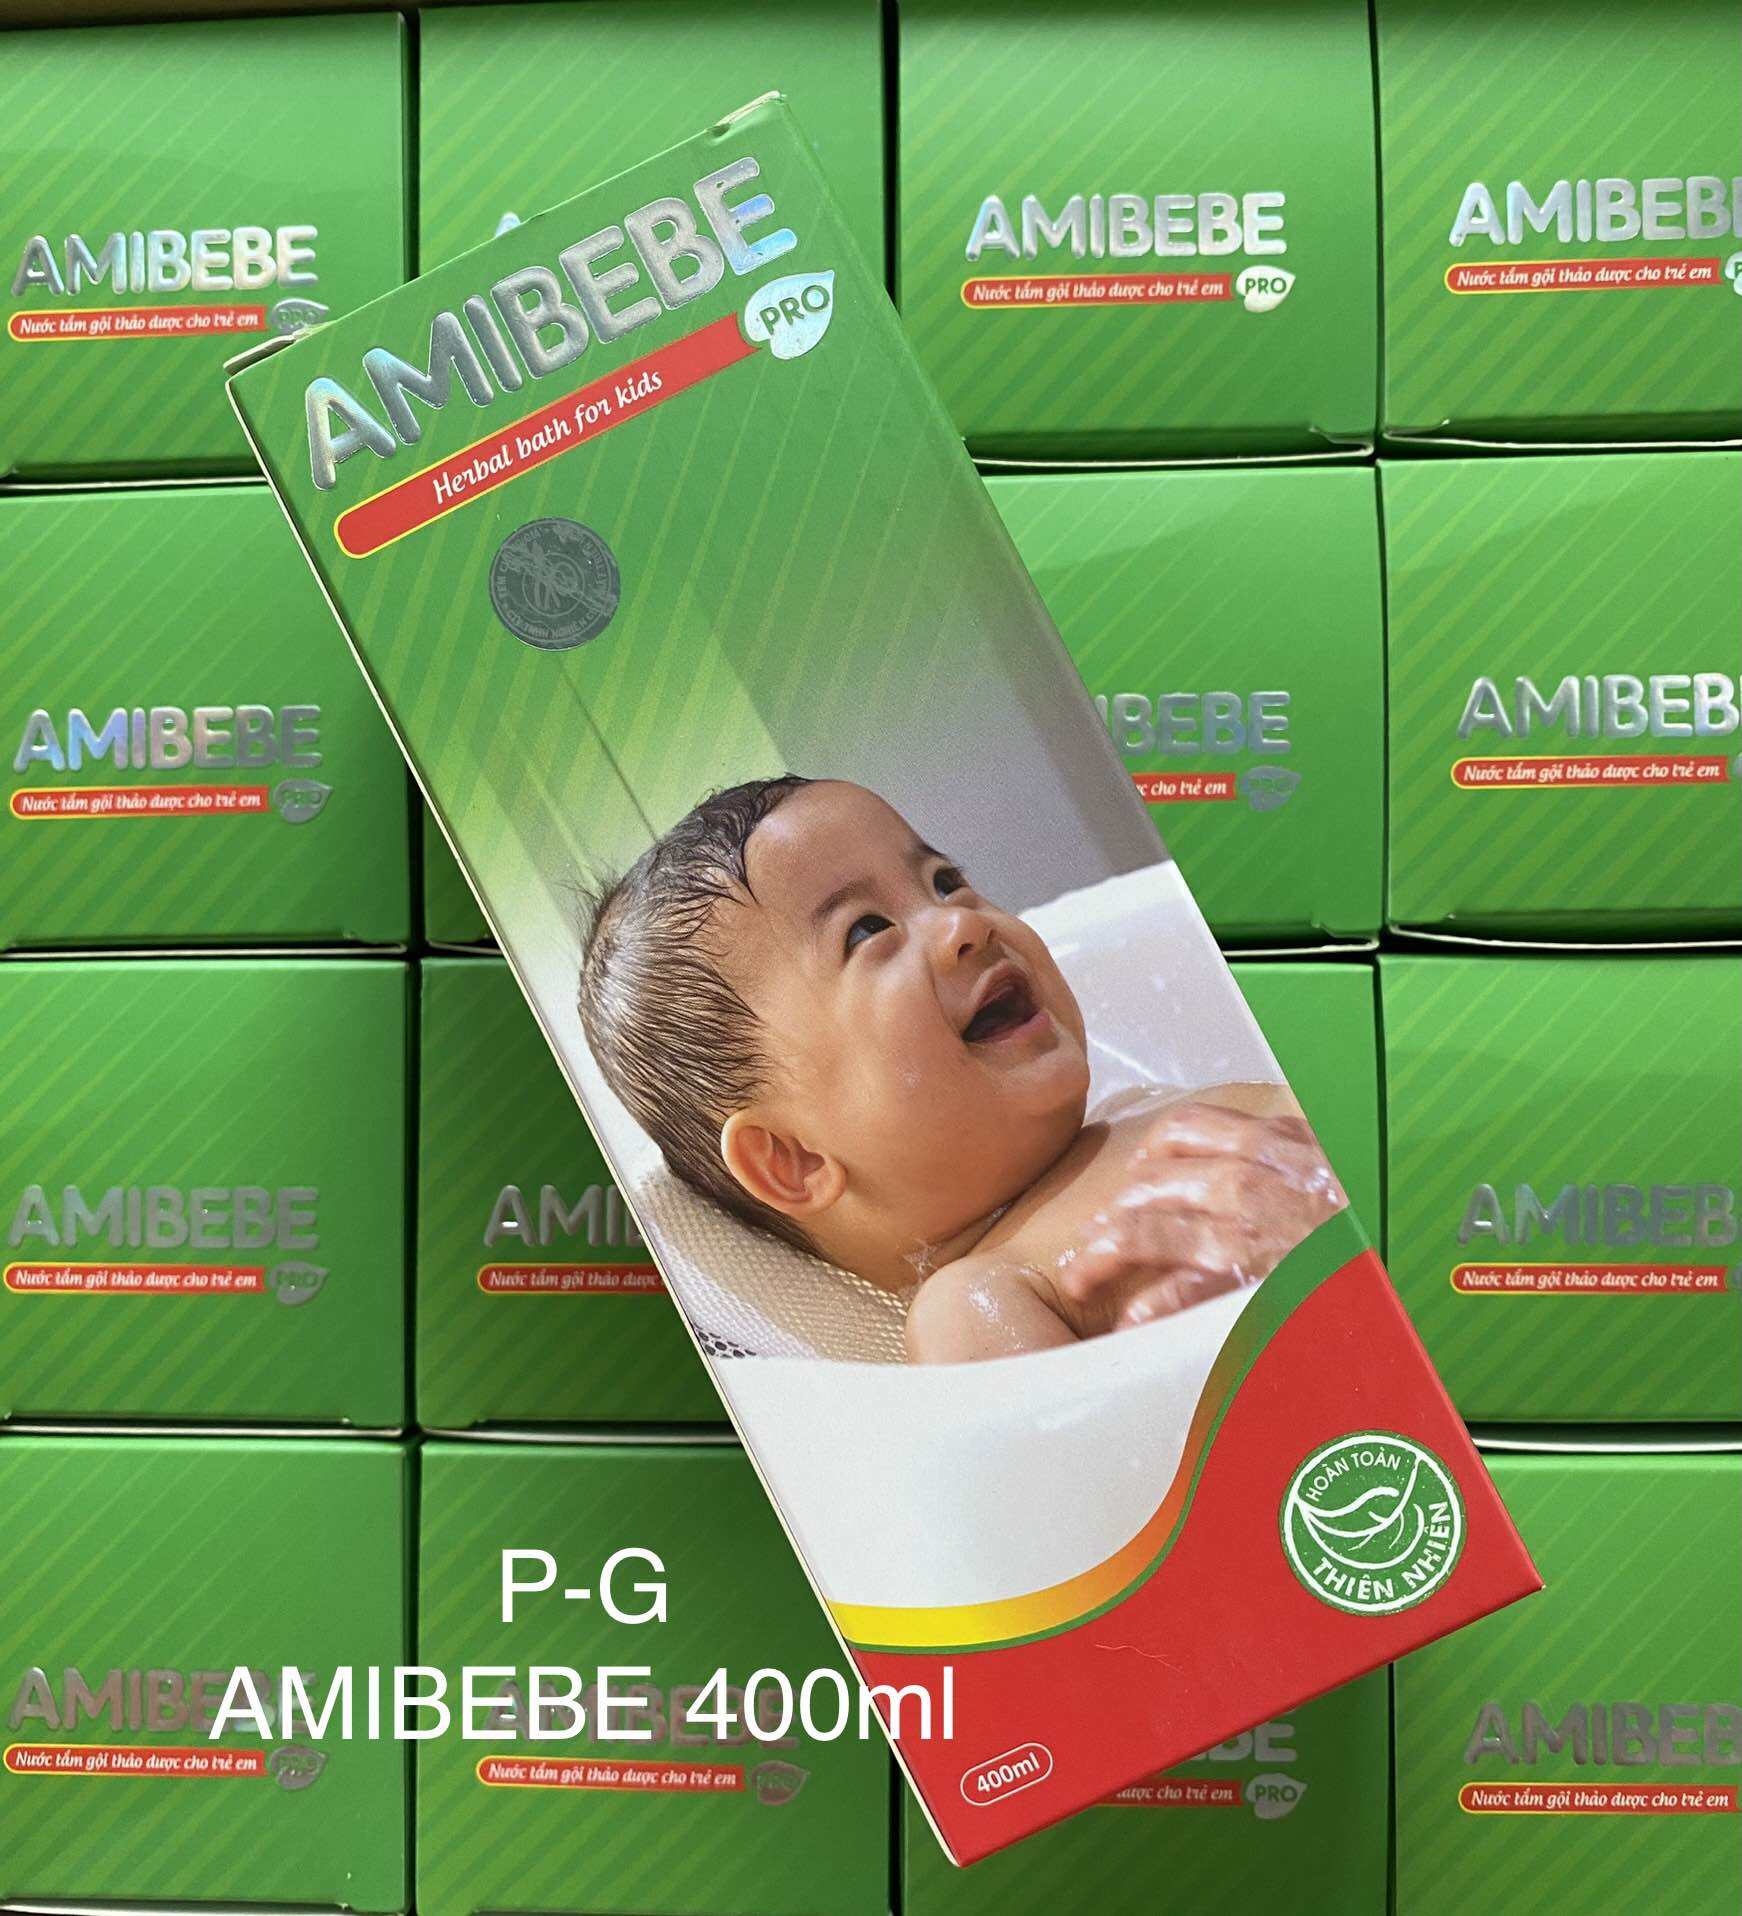 Amibebe 400ml Nước tắm gội thảo dược trẻ em hỗ trợ rôm sẩy. 225 000 chai